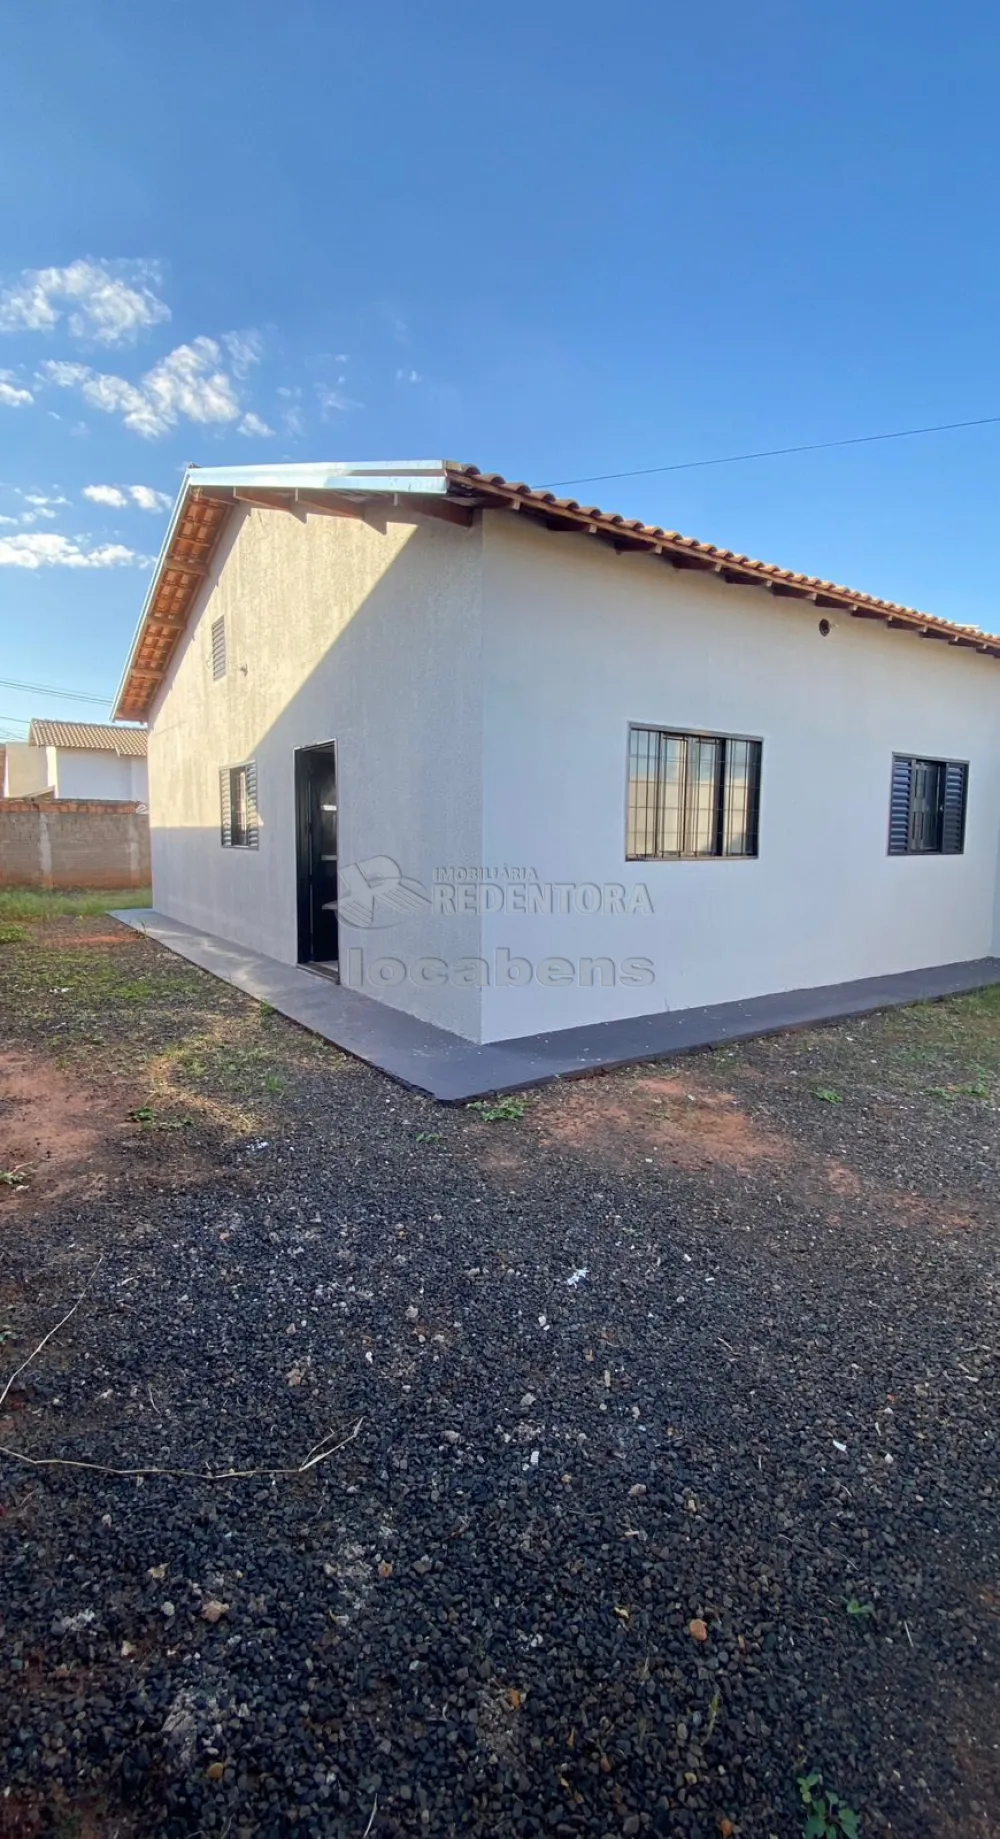 Comprar Casa / Padrão em São José do Rio Preto R$ 210.000,00 - Foto 5